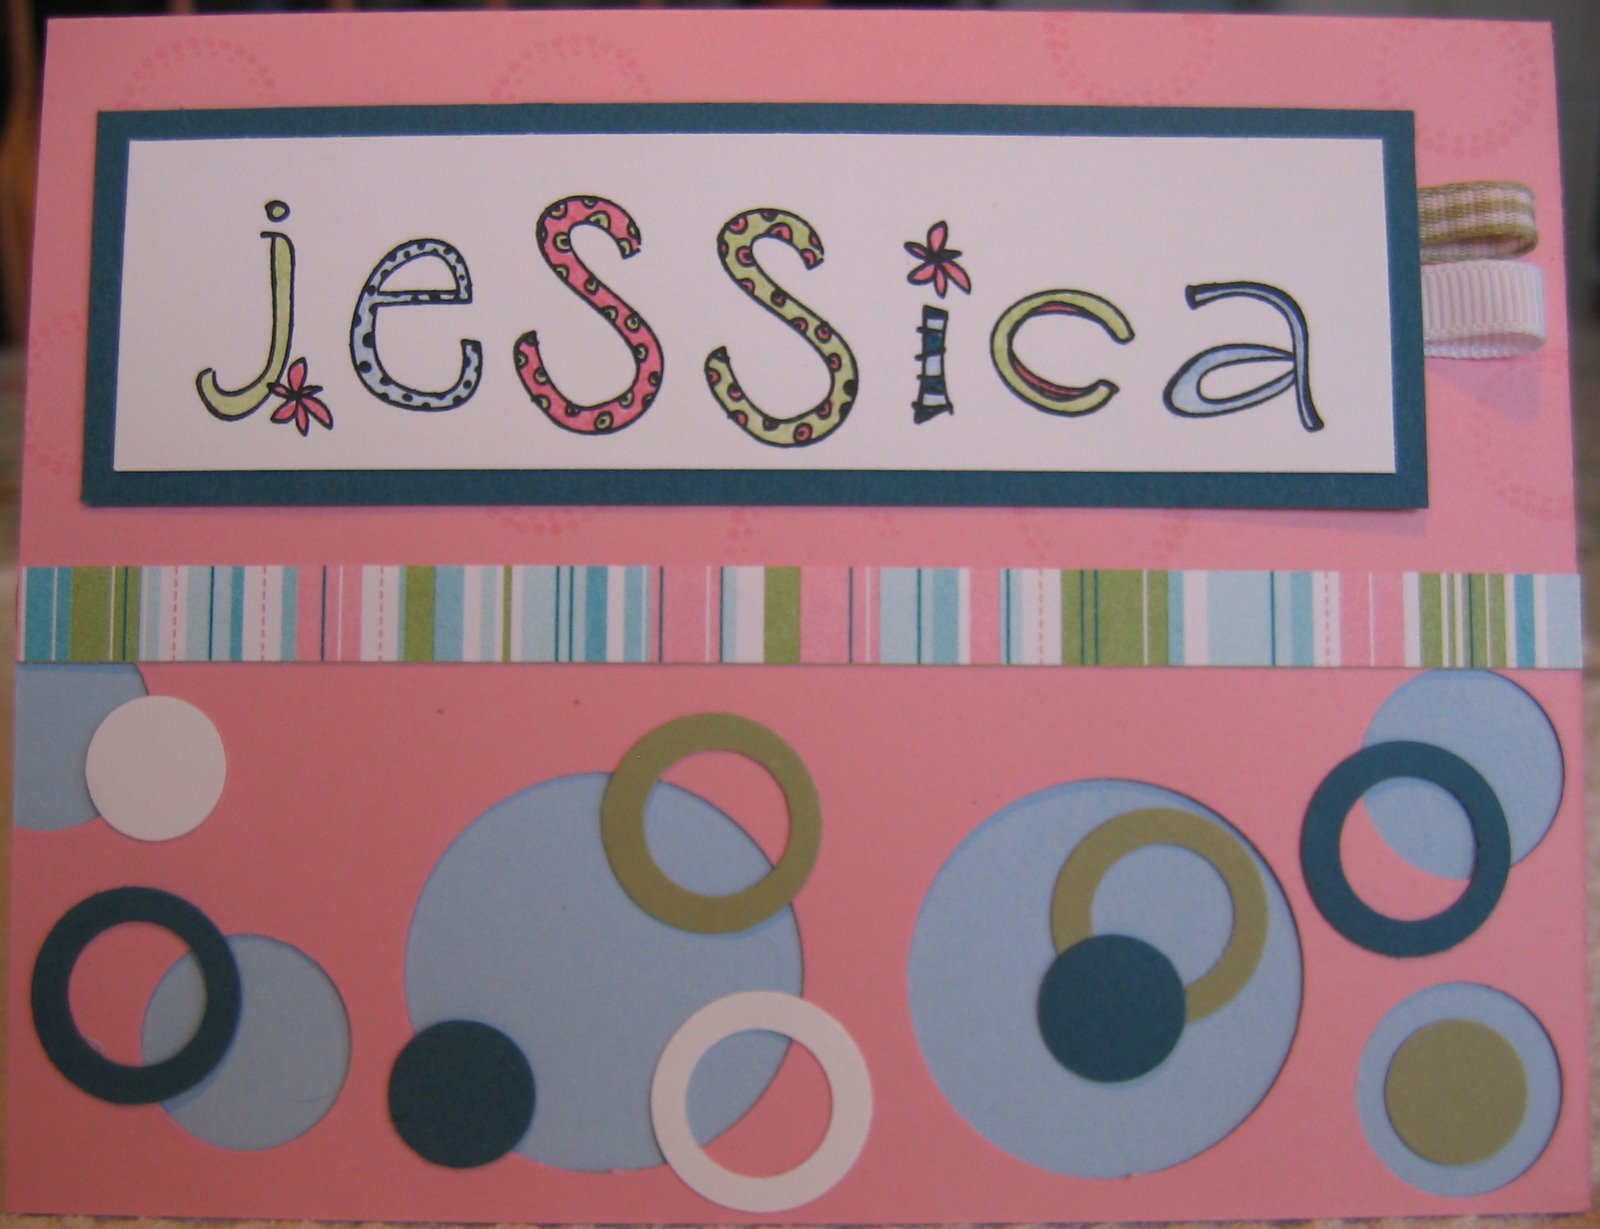 [Jessica's+Card.jpg]